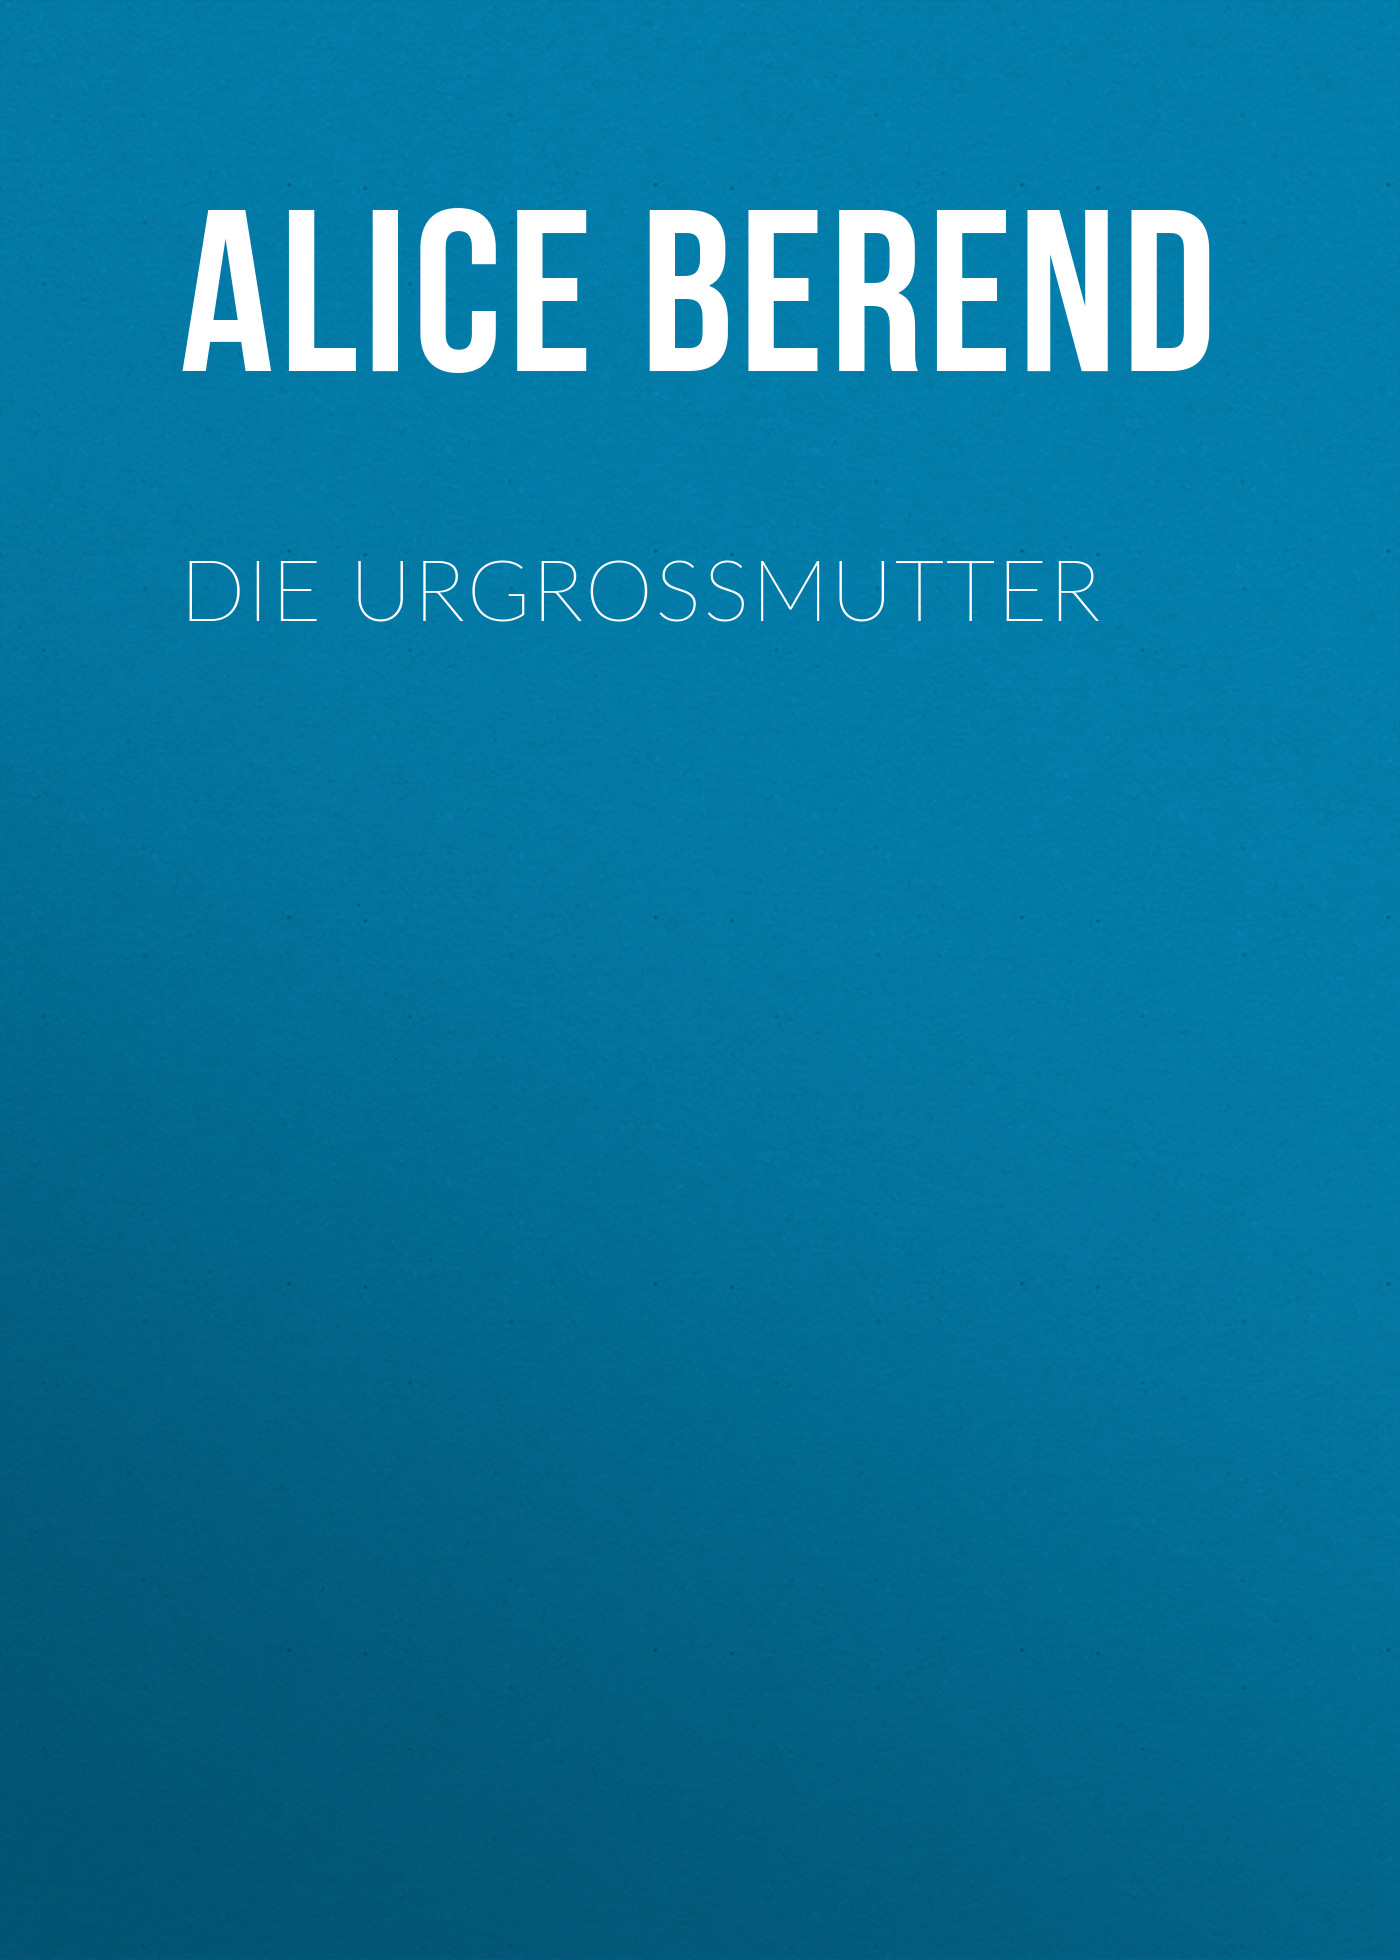 Книга Die Urgroßmutter из серии , созданная Alice Berend, может относится к жанру Зарубежная классика. Стоимость электронной книги Die Urgroßmutter с идентификатором 48632924 составляет 0 руб.